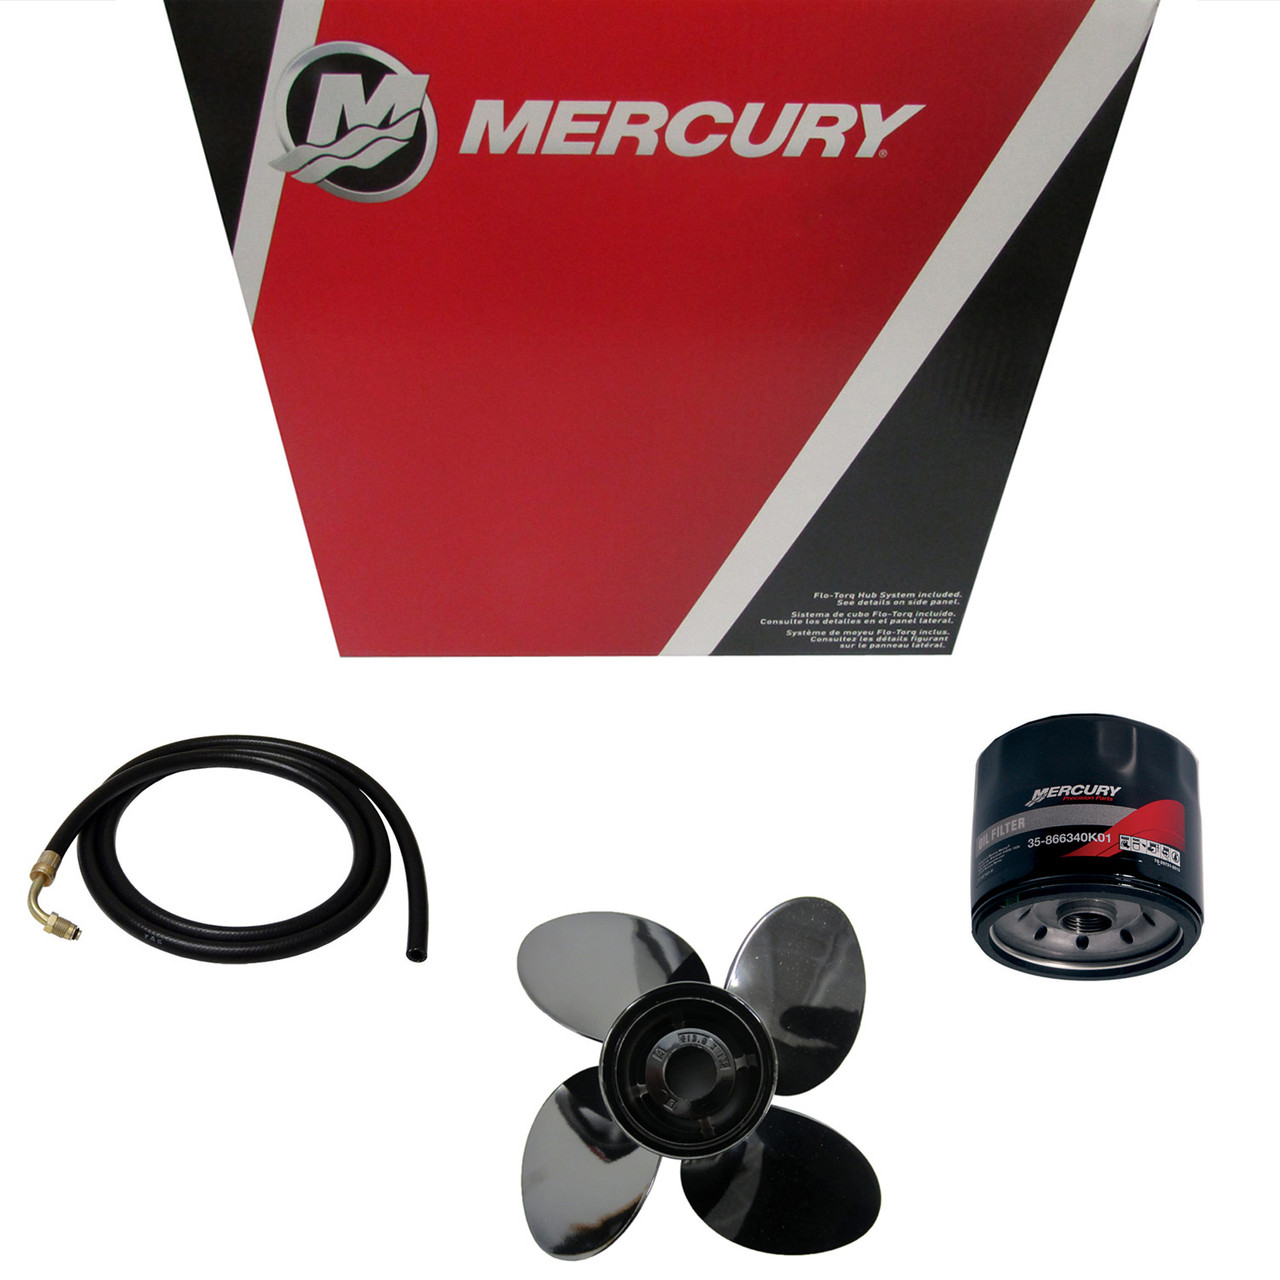 Mercury Marine / Mercruiser New OEM Reverse Lock, 804046003